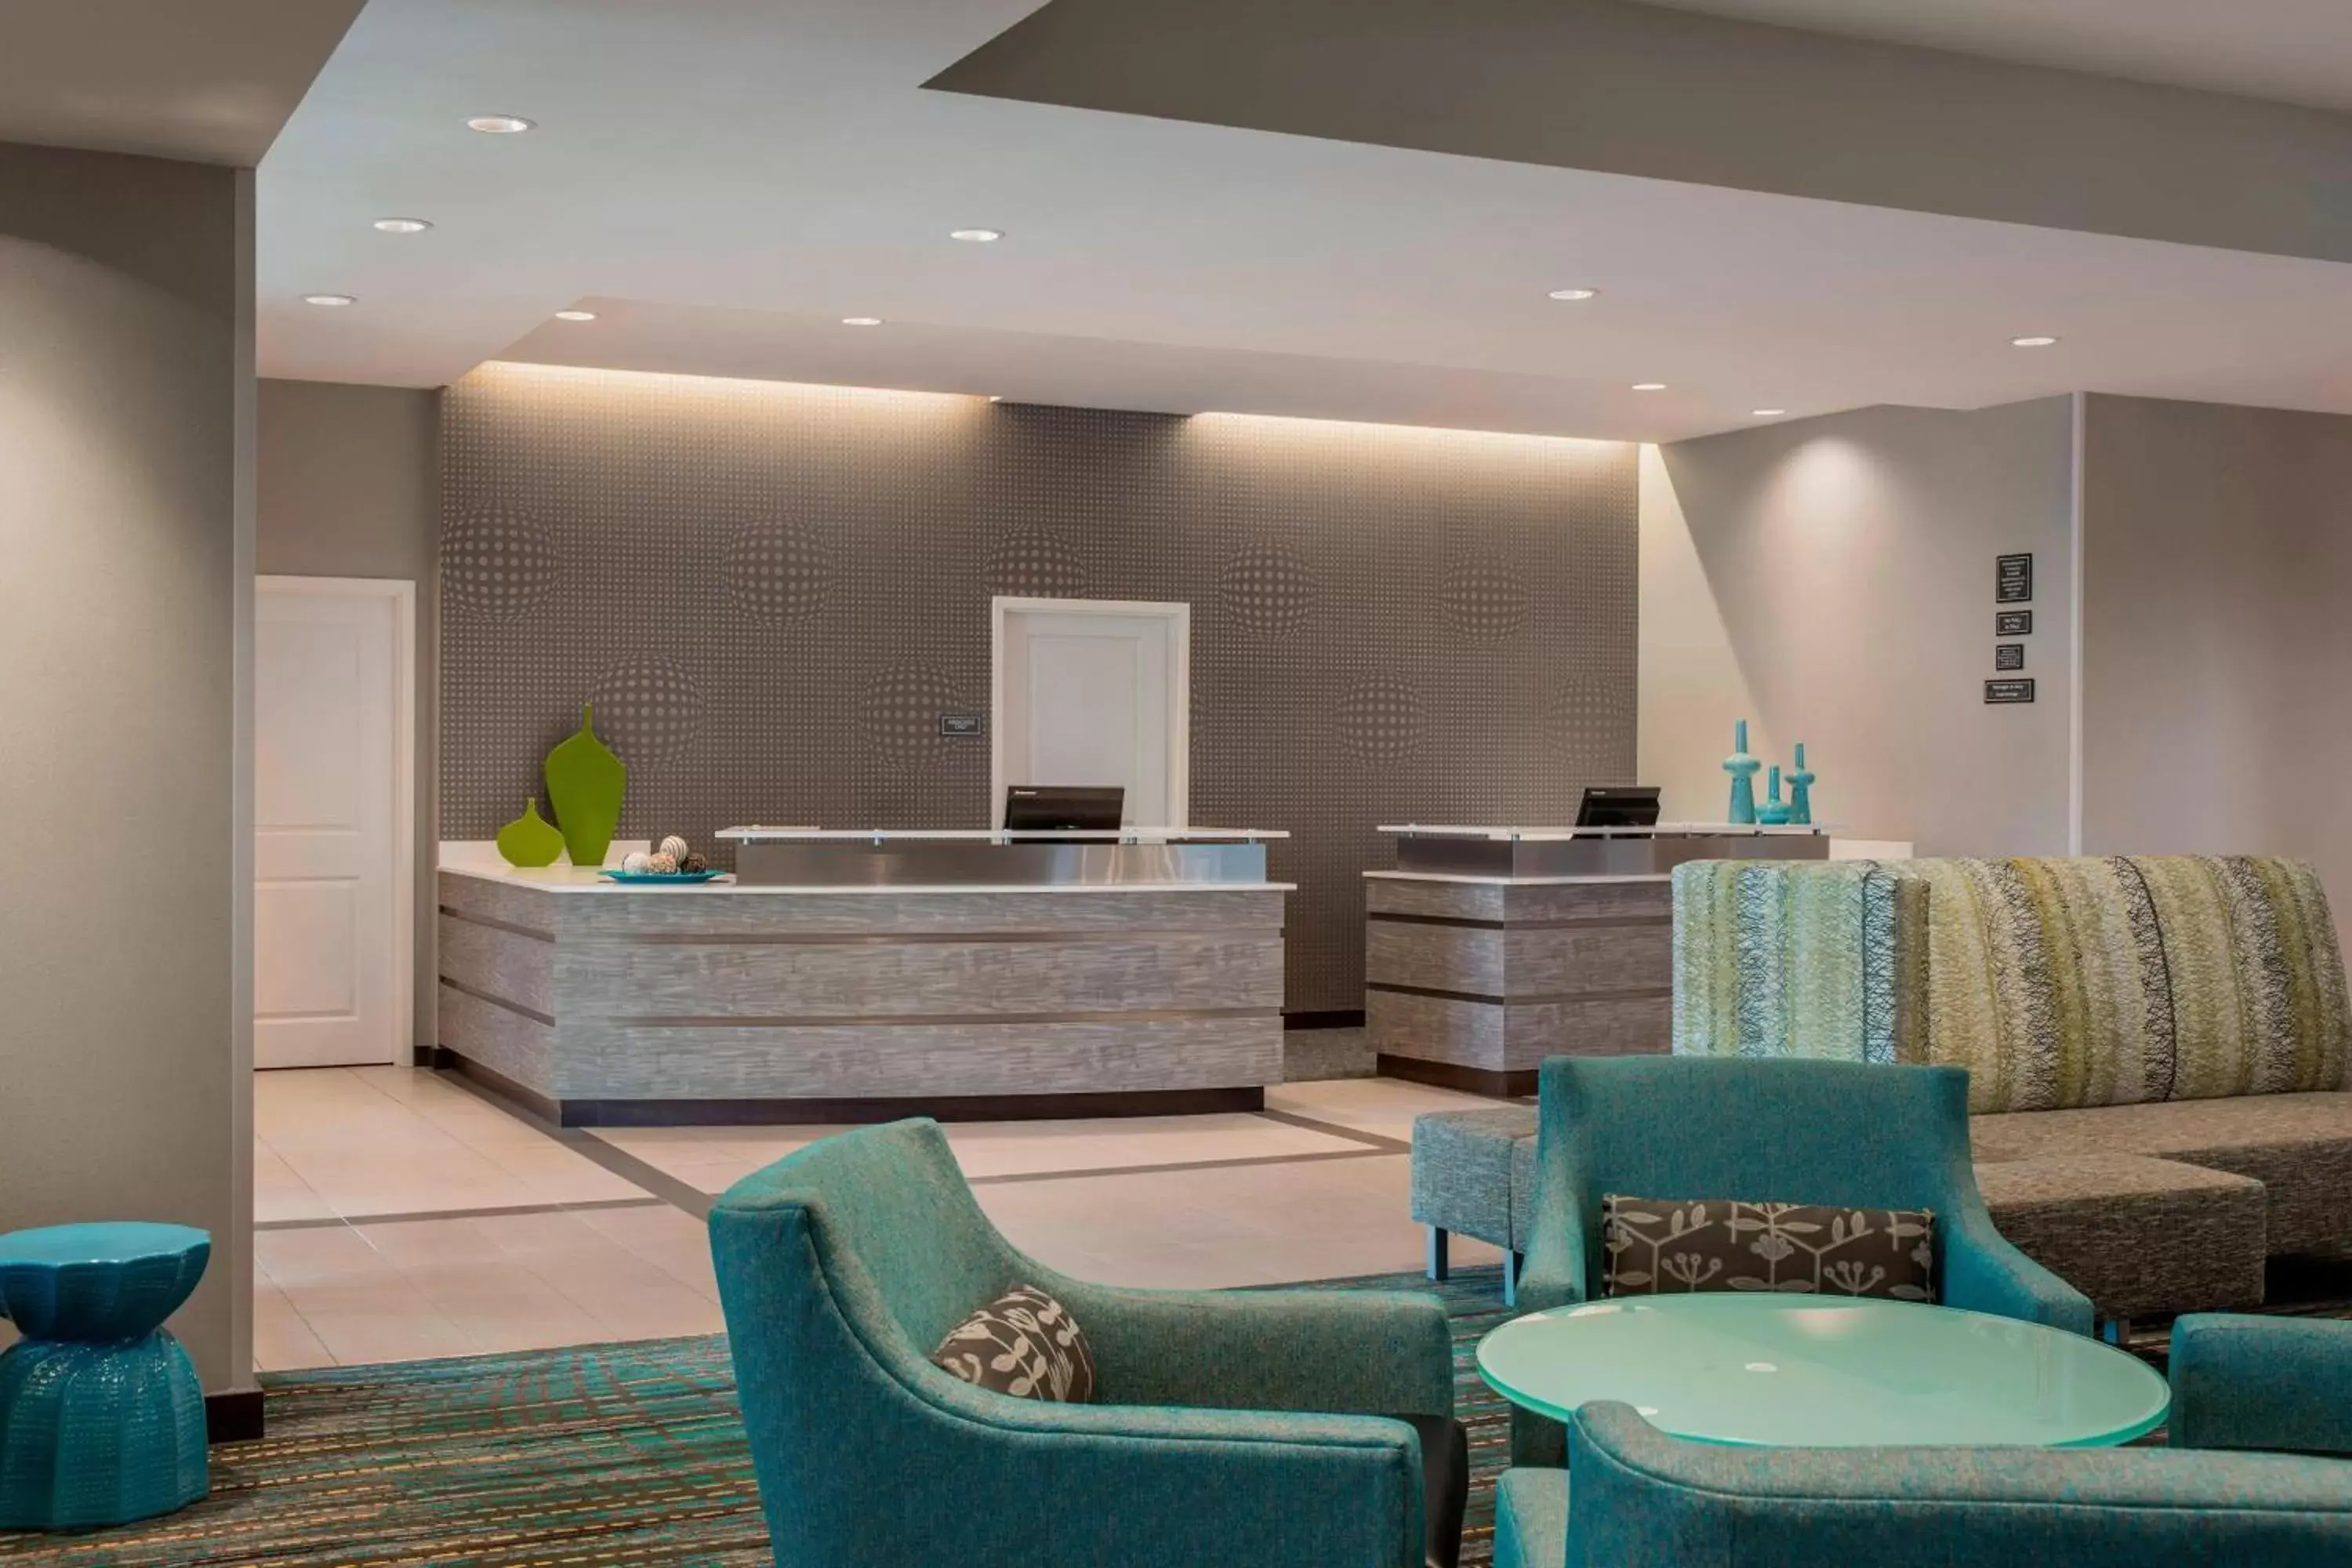 Lobby or reception in Residence Inn by Marriott Regina